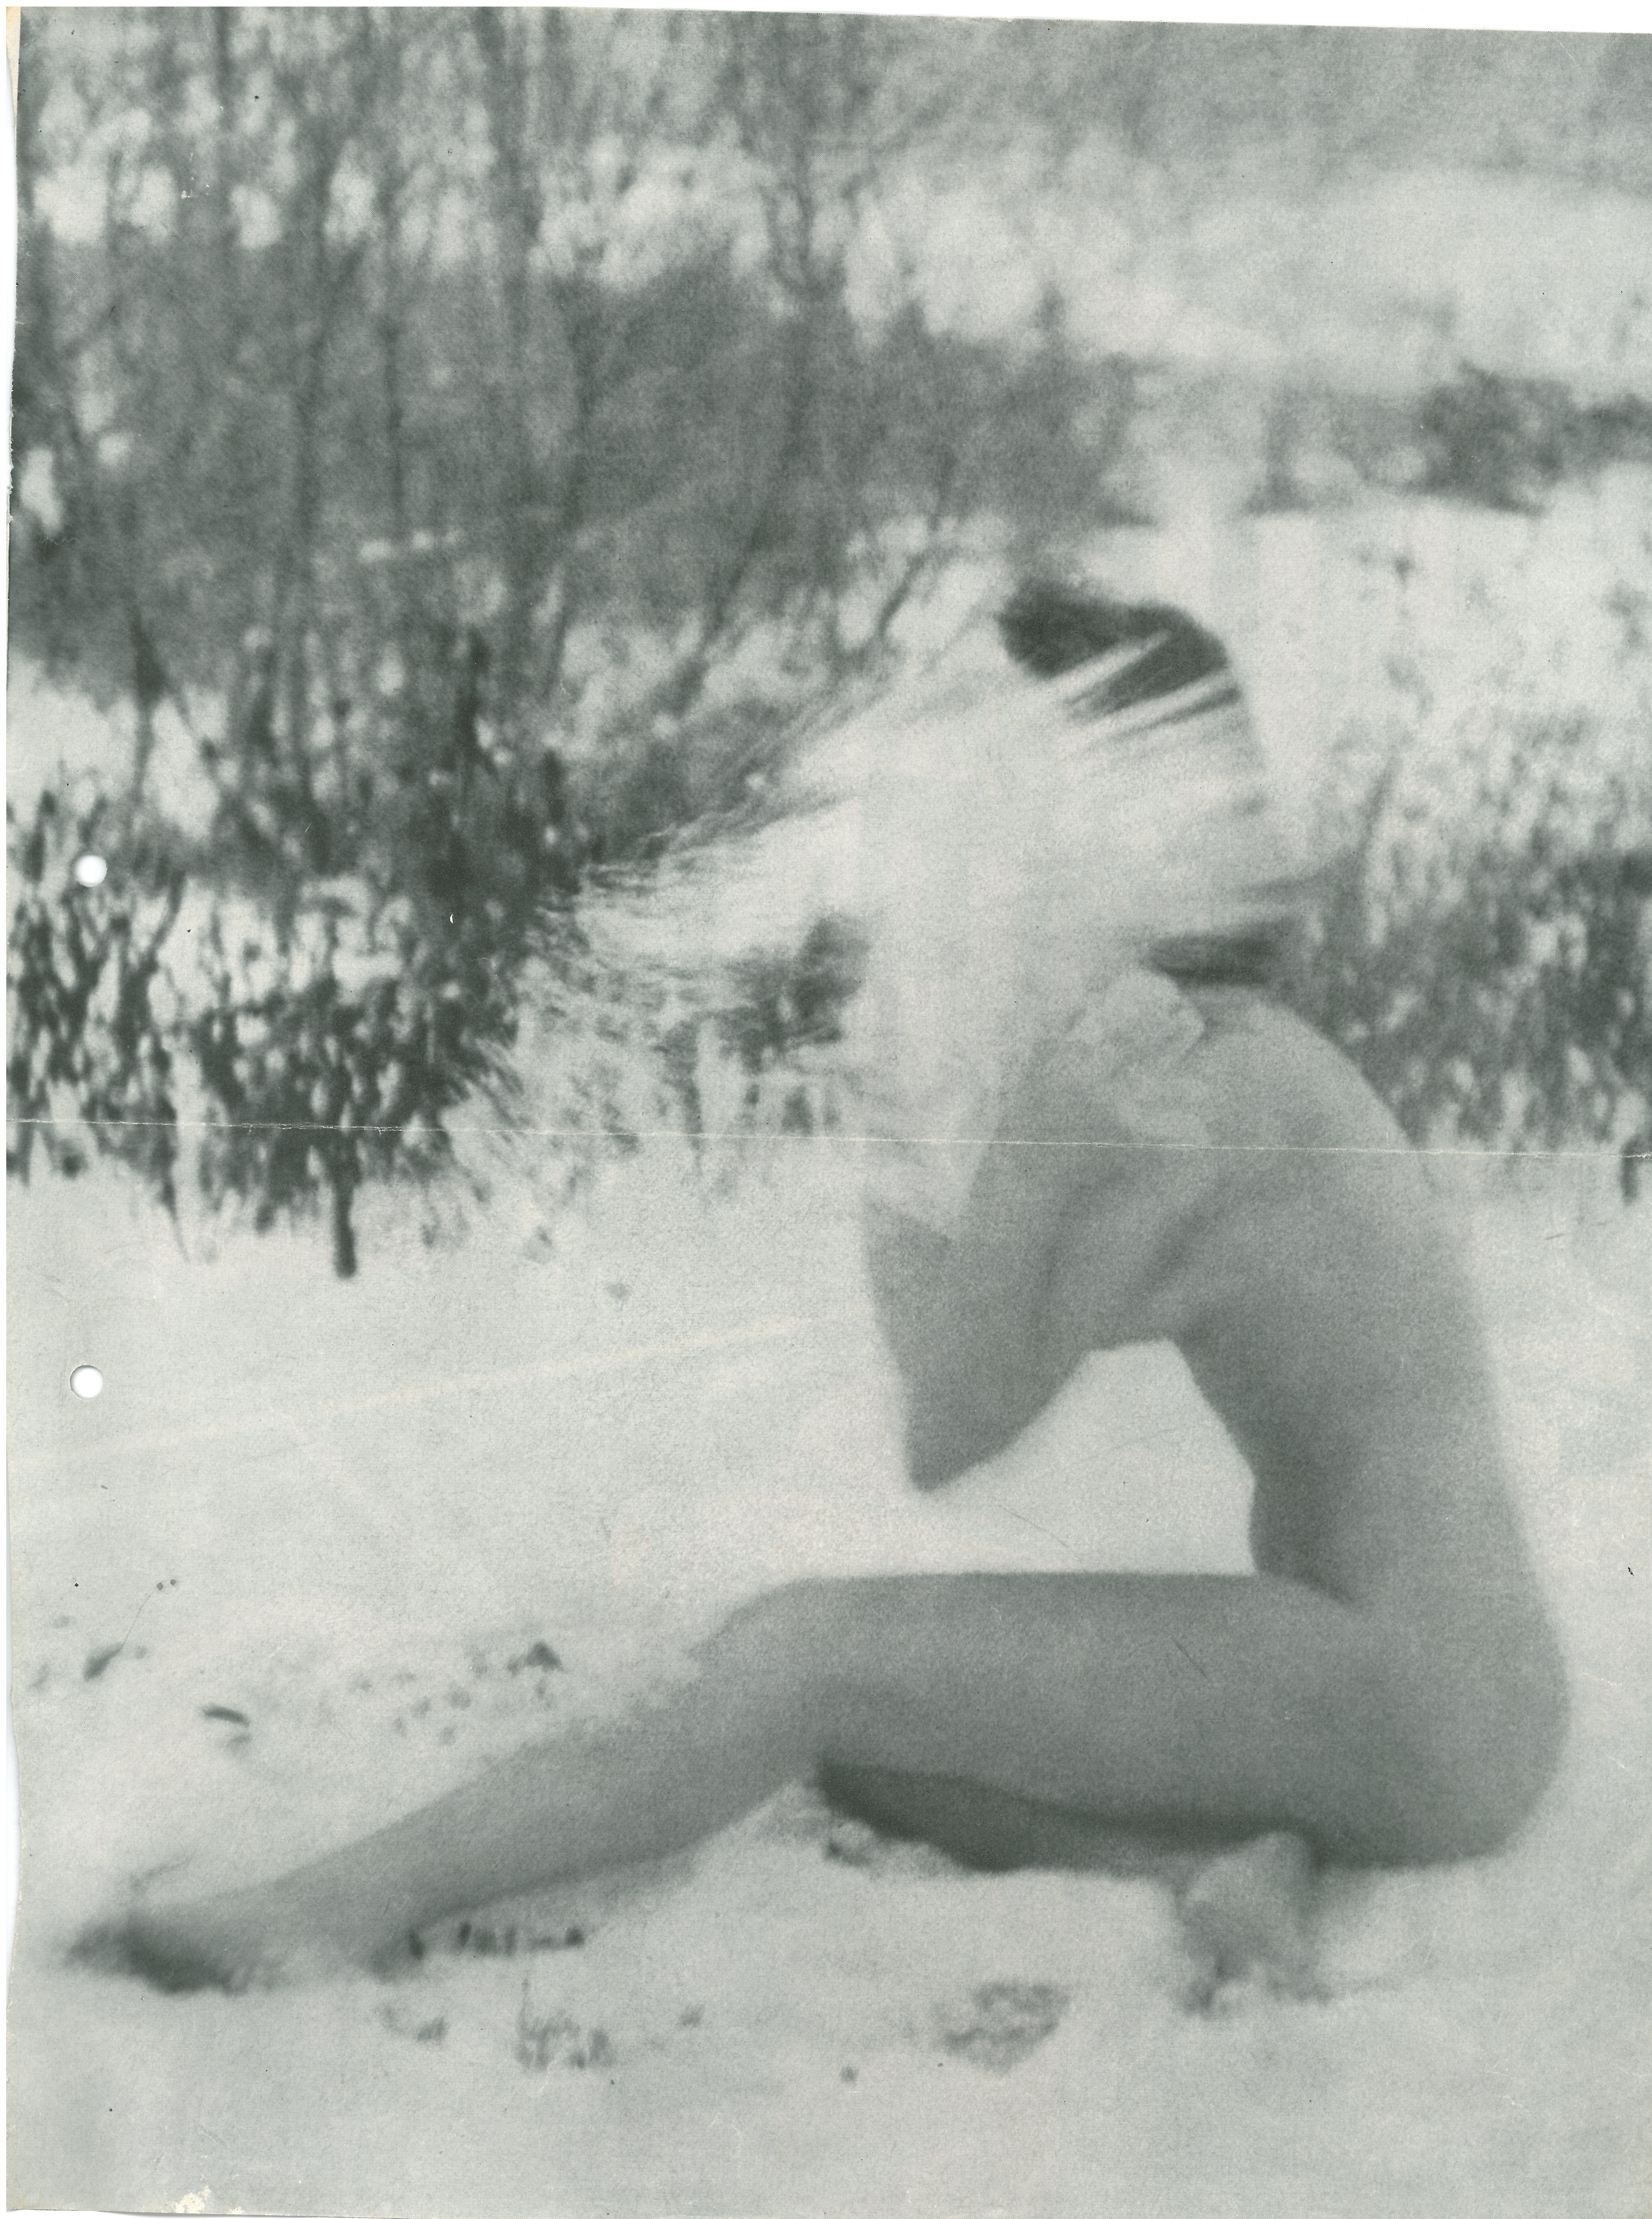 1957. Pyörähdys lumihangessa päätyi Holiday-lehden Suomea käsittelevään juttuun, mikä aiheutti kohun ulkoministeriössä. Kuva: Holiday